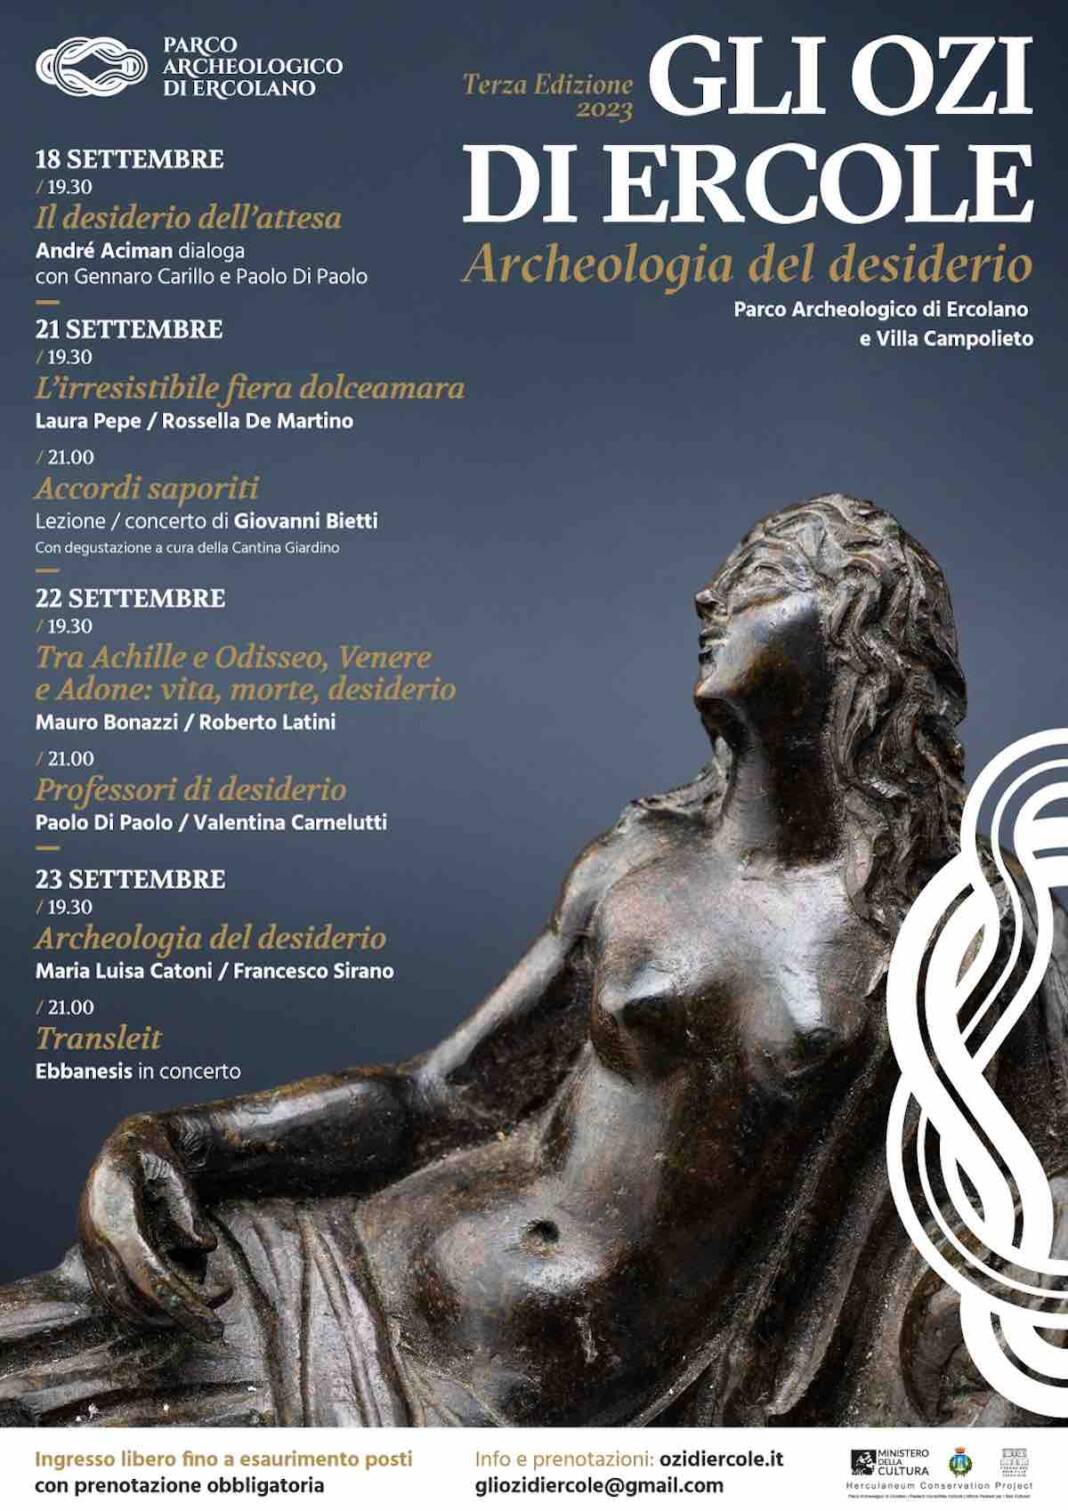 Gli Ozi di Ercole – terza edizione. Archeologia del desiderio dal 18 al 23 settembre